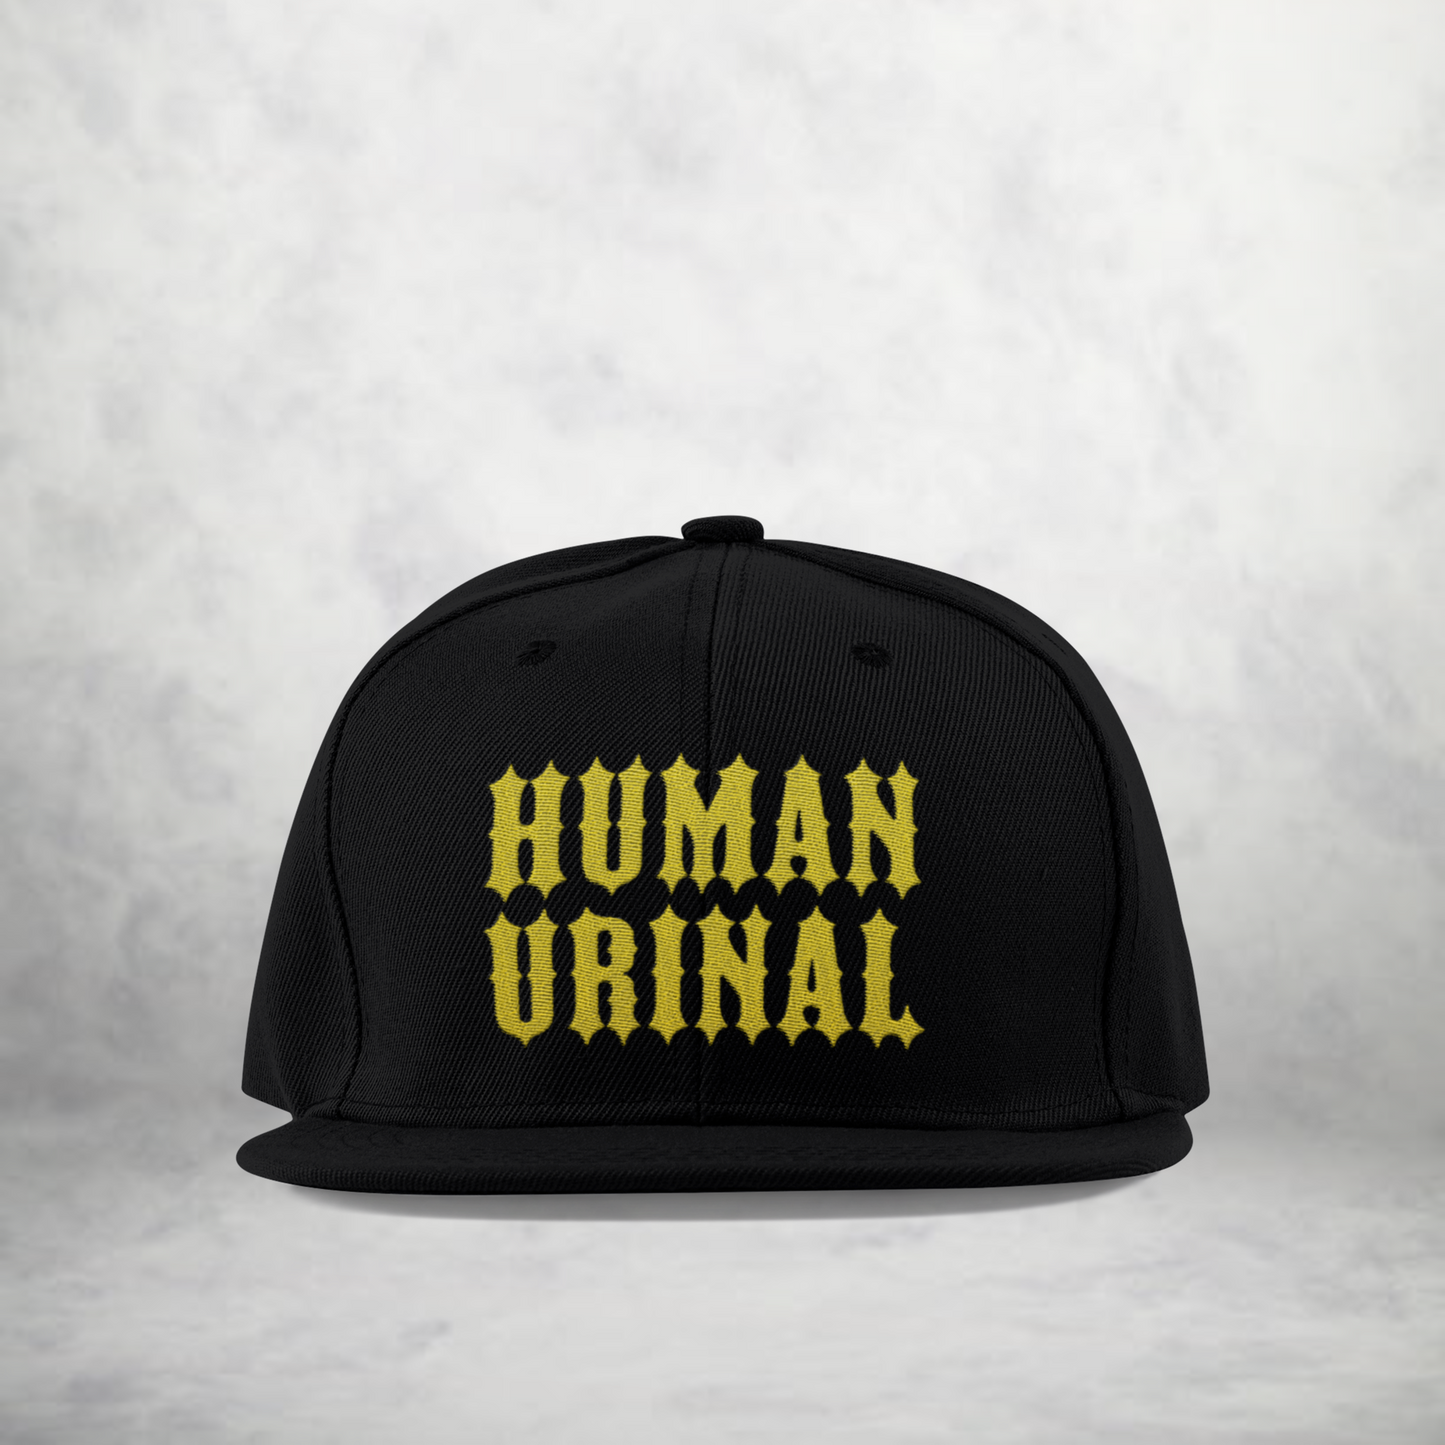 Human Urinal, Snapback Cap